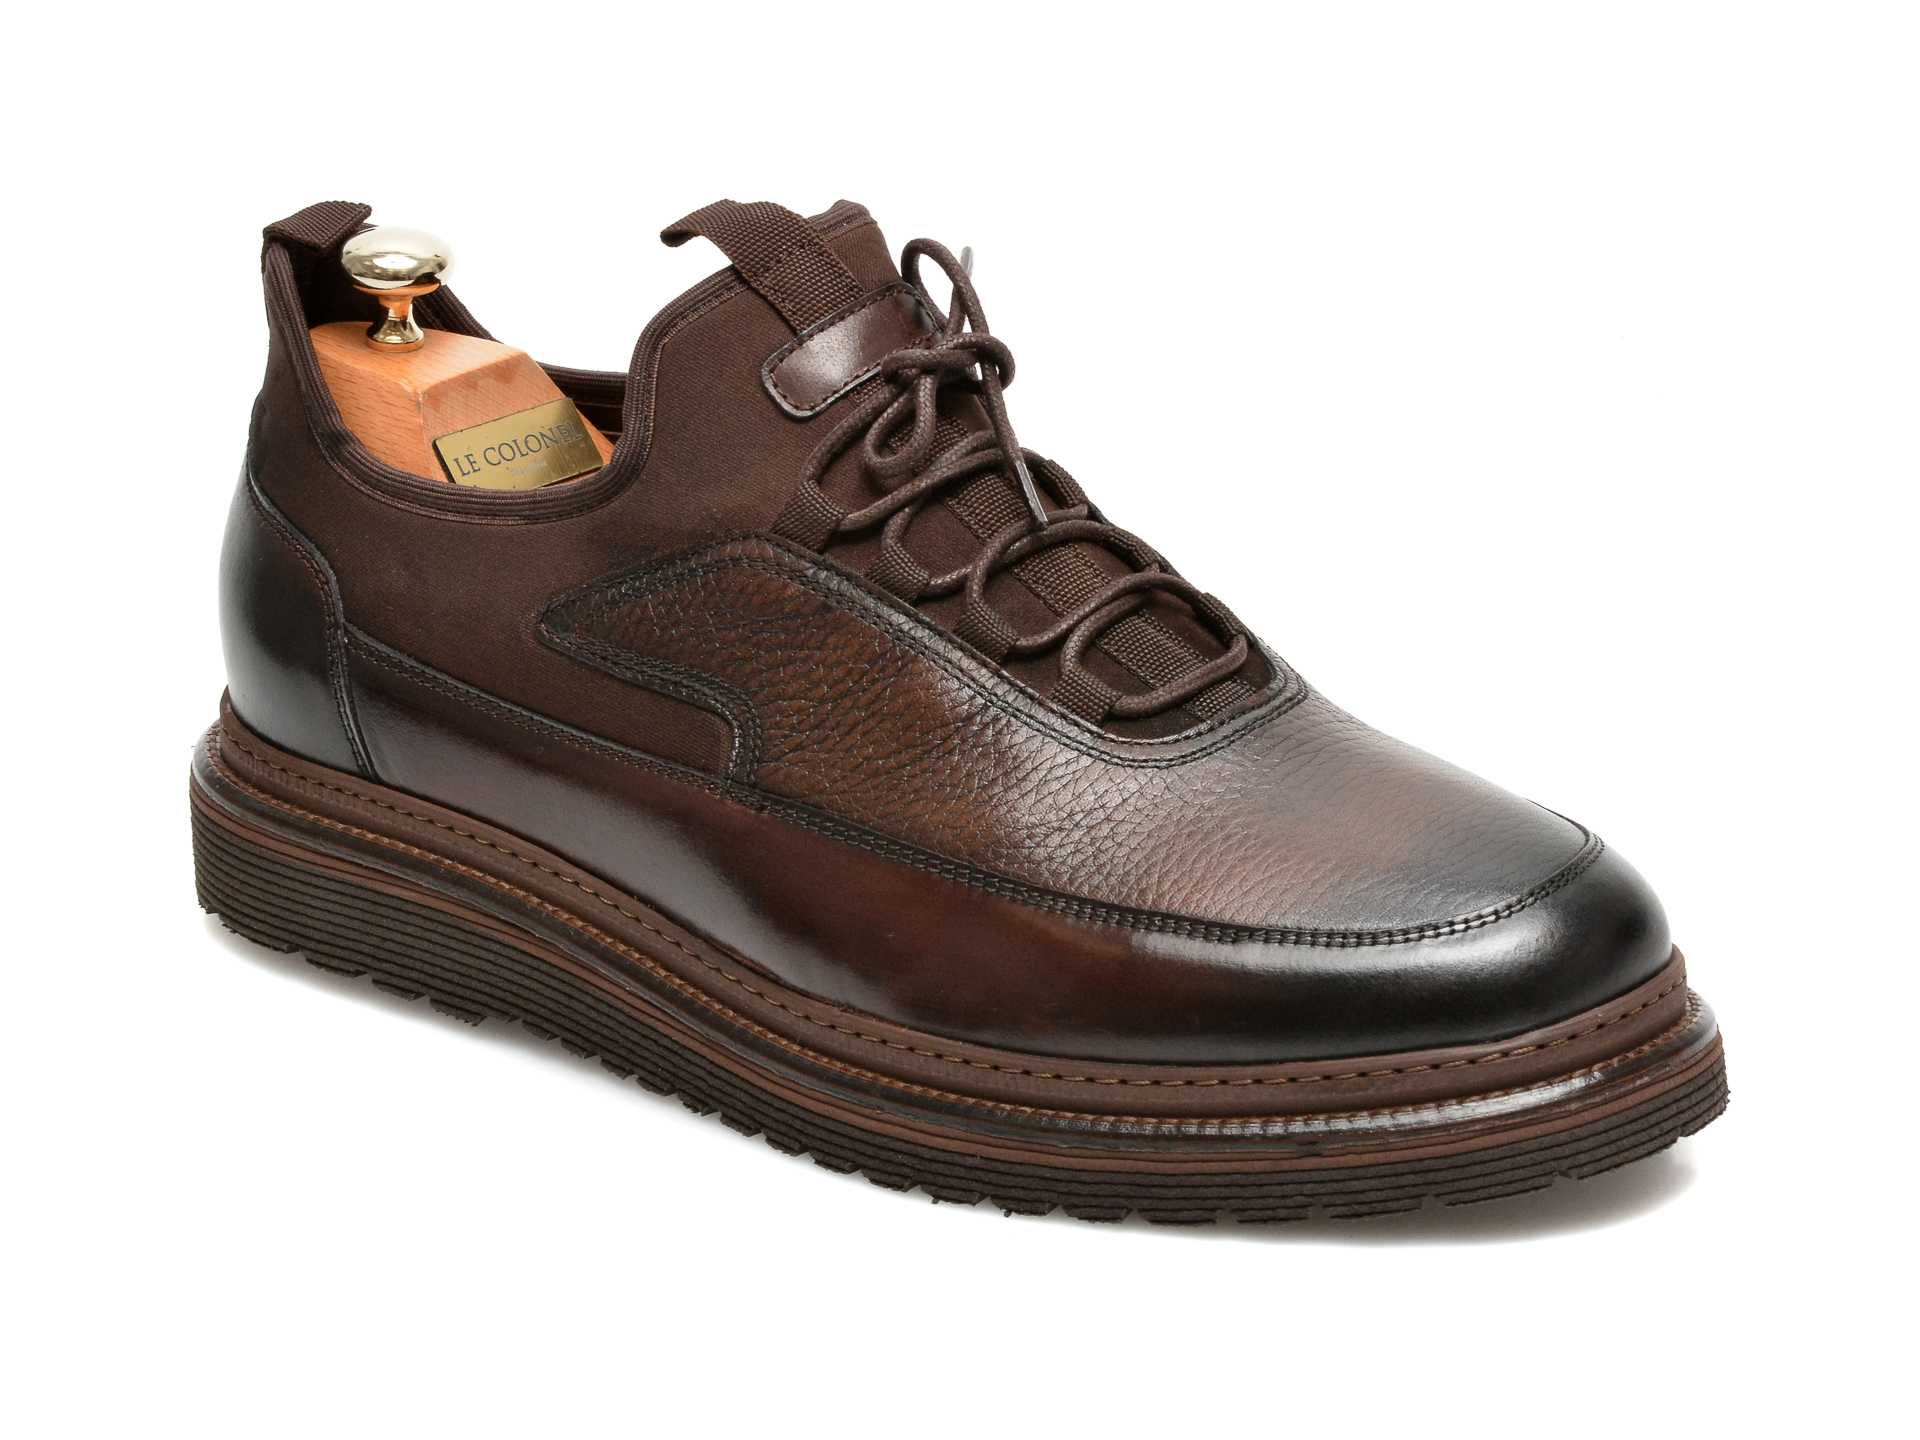 Pantofi LE COLONEL maro, 64816, din material textil si piele naturala Le Colonel imagine 2022 reducere